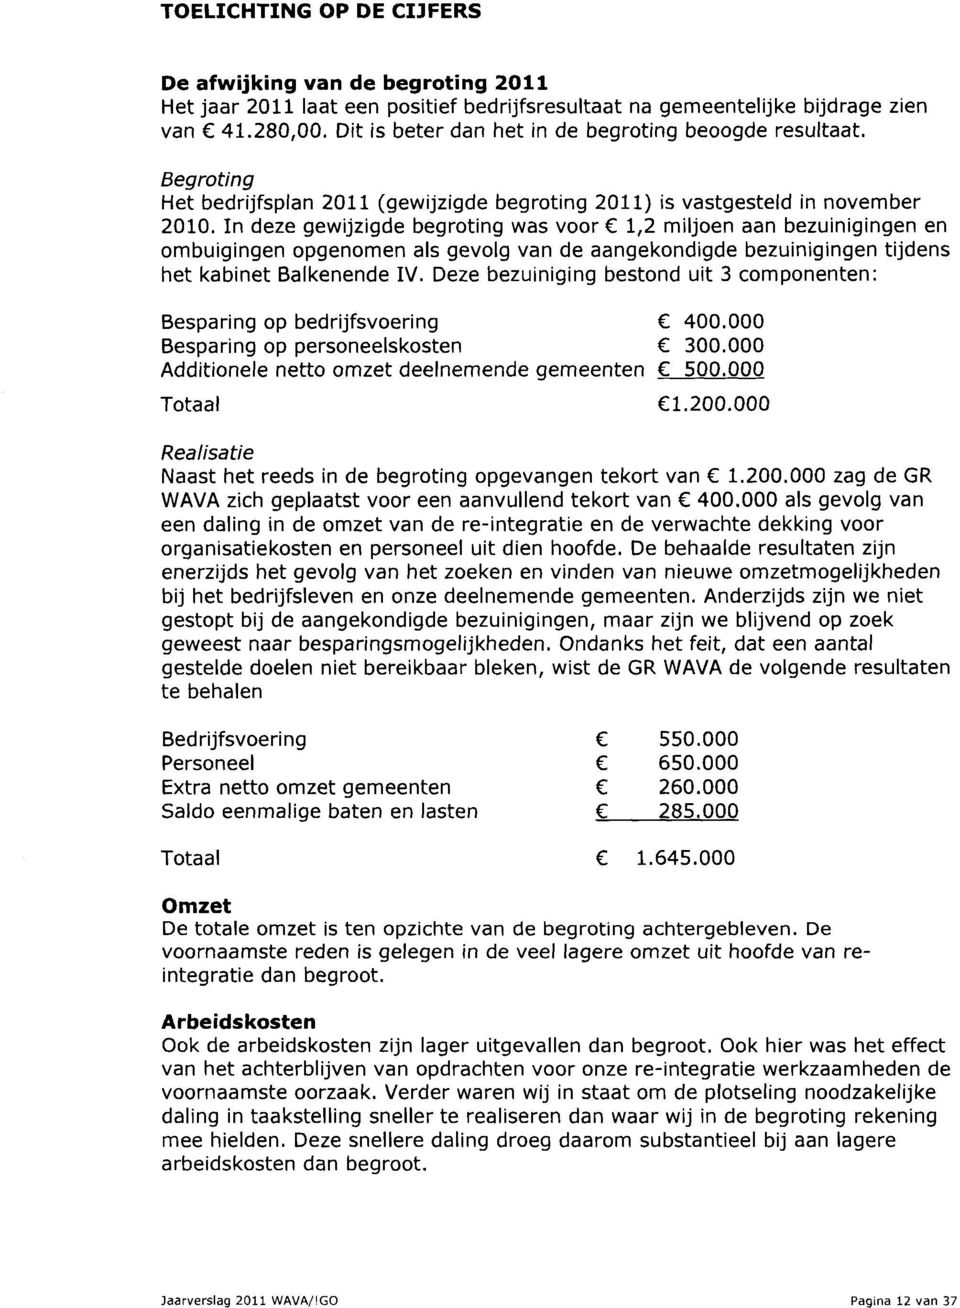 In deze gewijzigde begroting was voor 1,2 miljoen aan bezuinigingen en ombuigingen opgenomen als gevolg van de aangekondigde bezuinigingen tijdens het kabinet Balkenende IV.